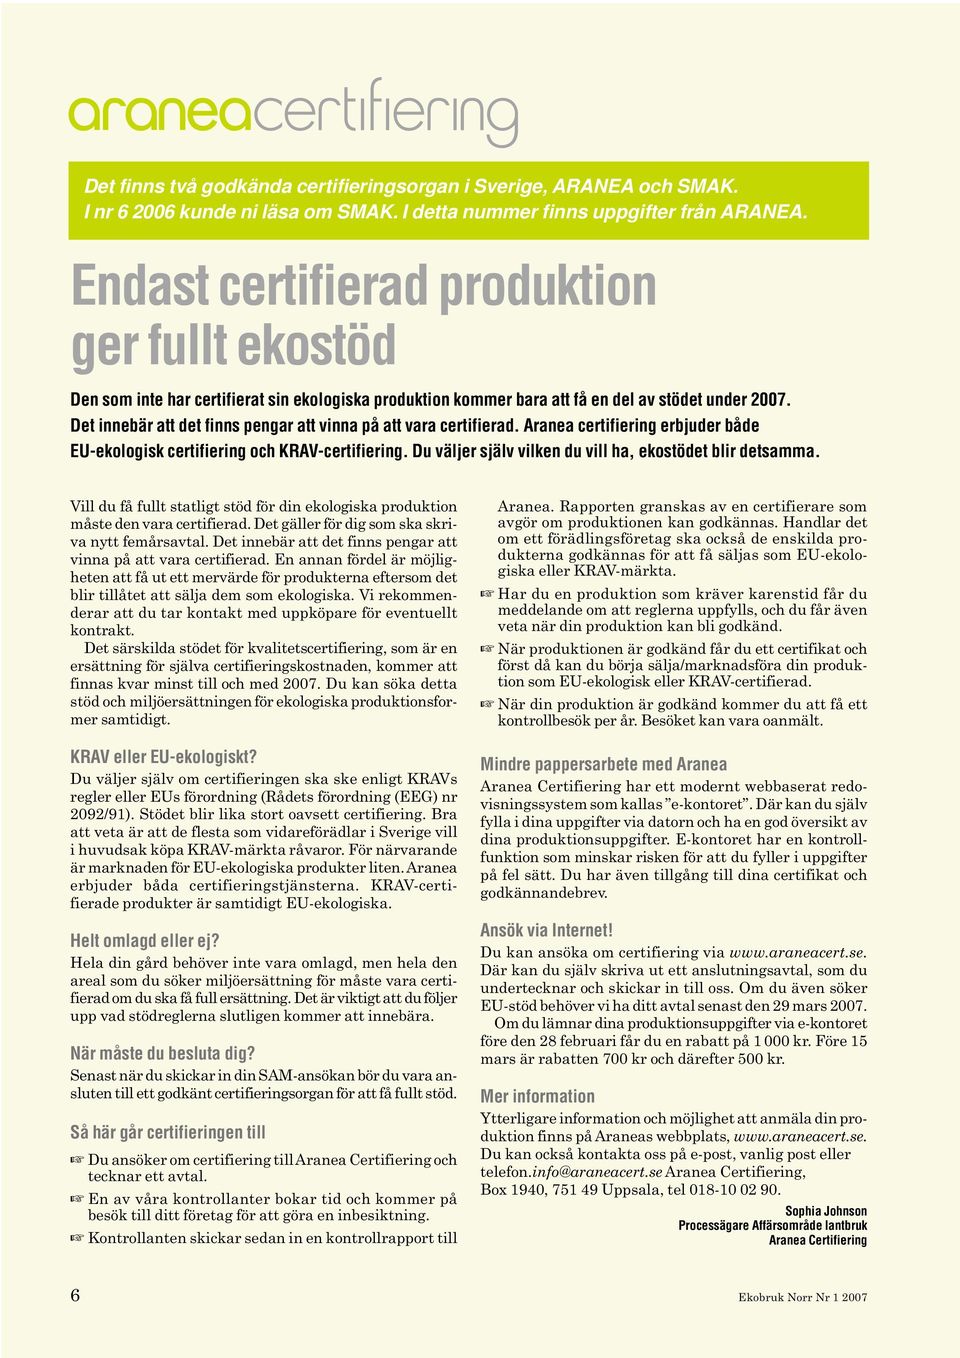 Det innebär att det finns pengar att vinna på att vara certifierad. Aranea certifiering erbjuder både EU-ekologisk certifiering och KRAV-certifiering.